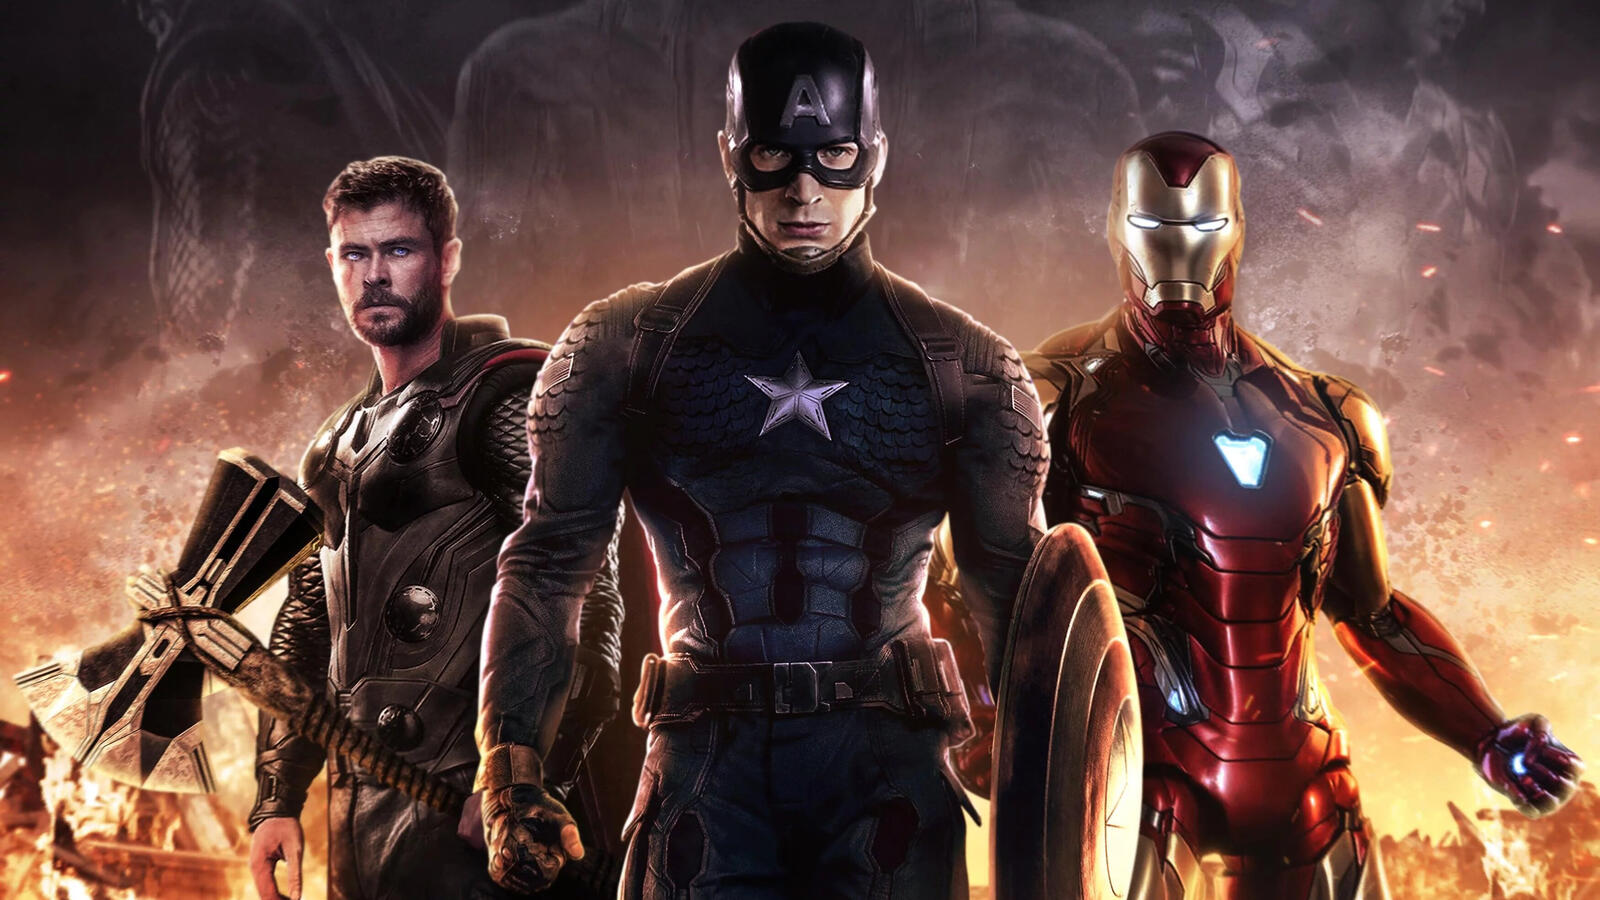 Wallpapers Avengers Endgame Iron Man captain america on the desktop